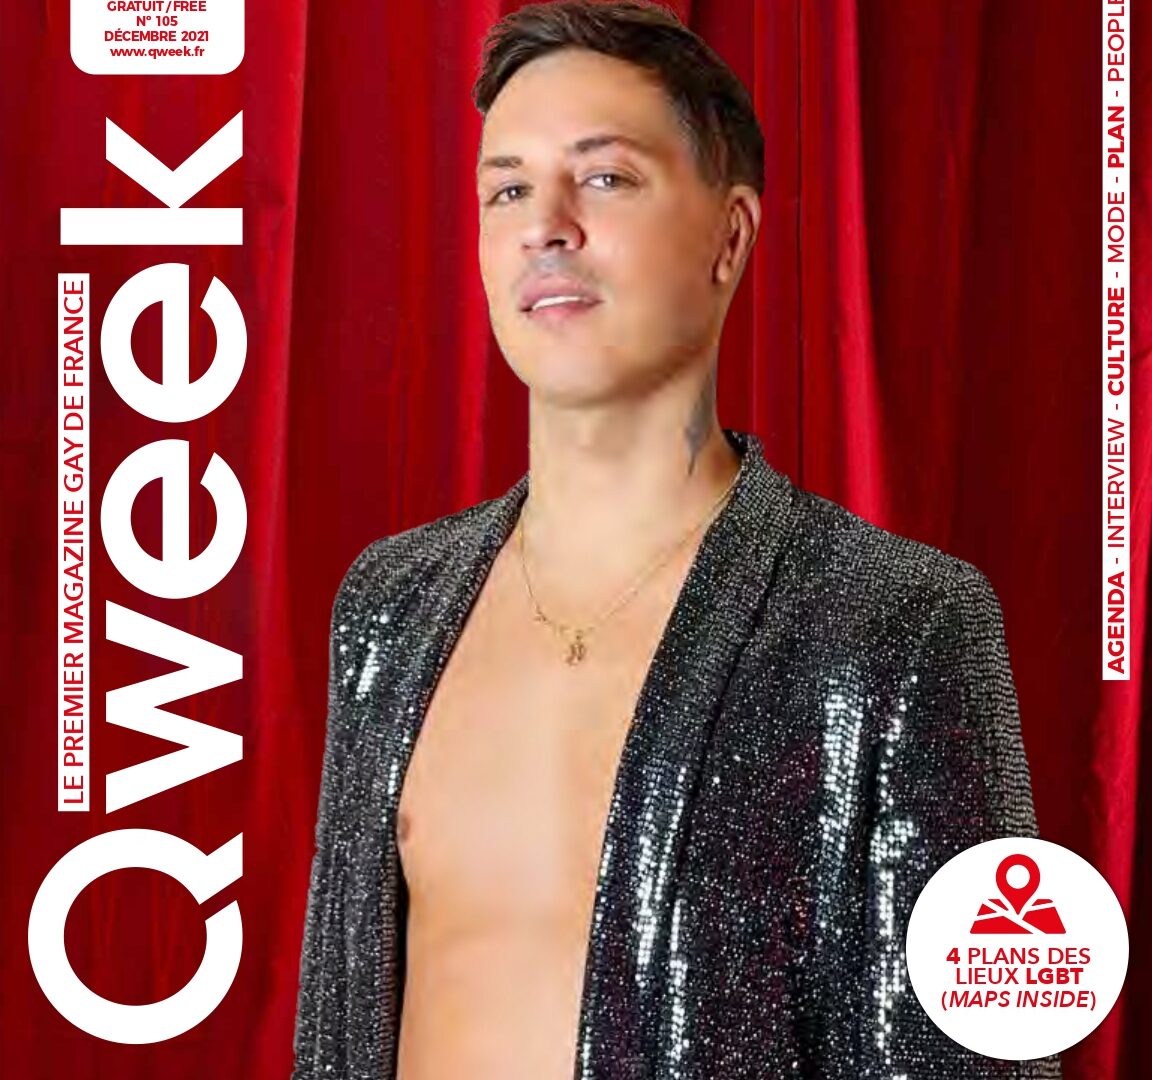 découvrez le sommaire du magazine de décembre - QWEEK Le mag gay photo